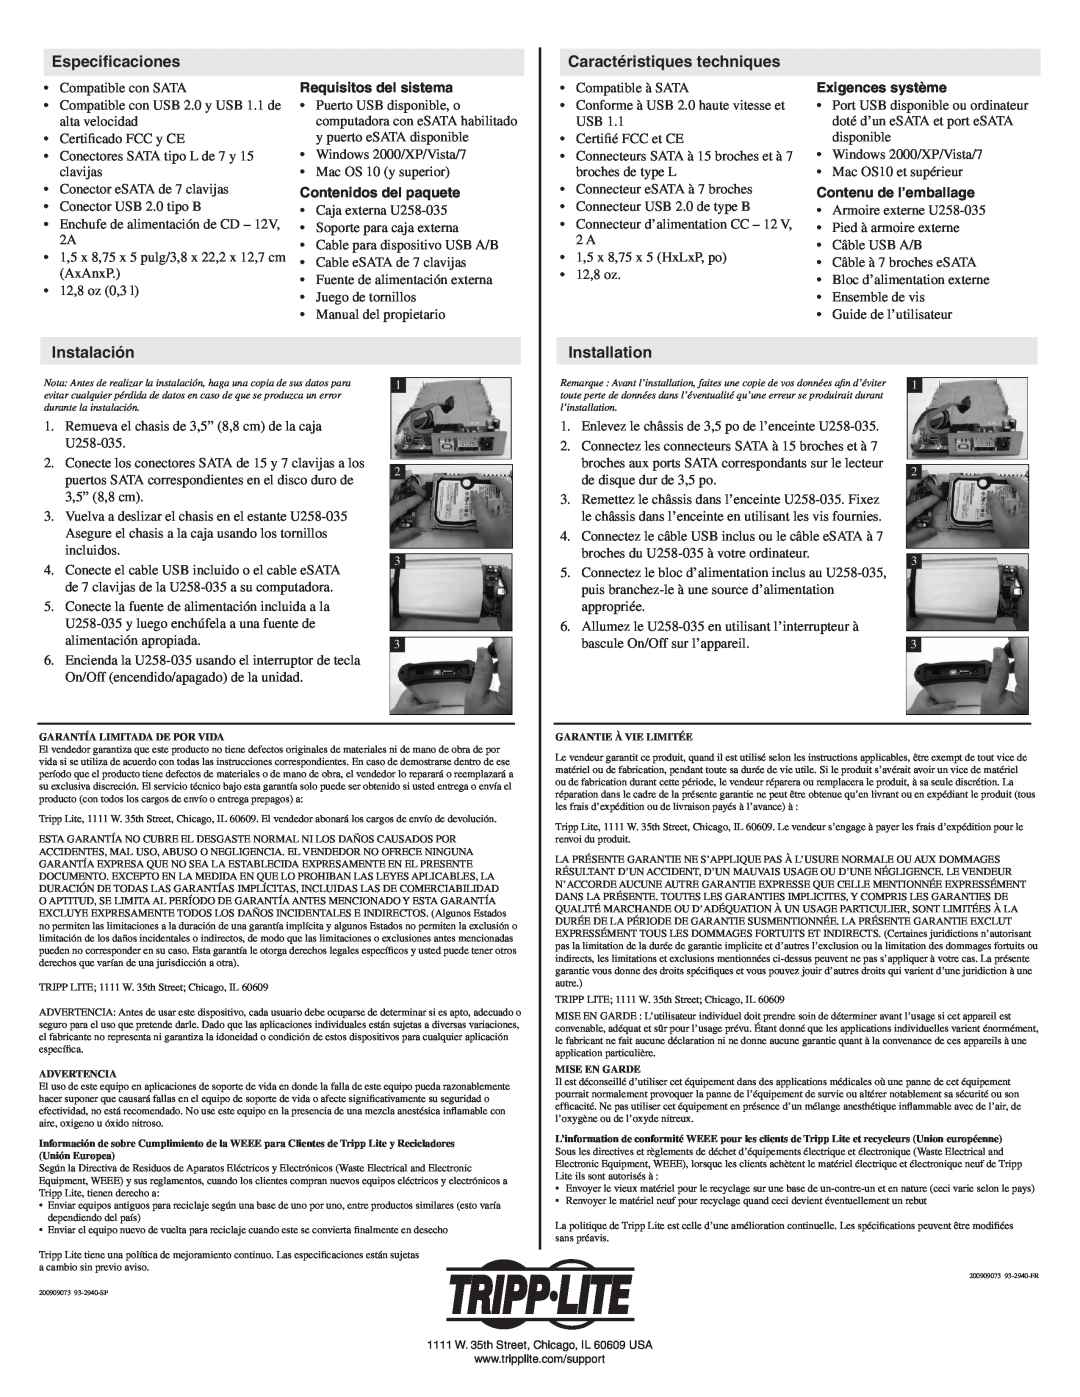 Tripp Lite U258-035 Especificaciones, Caractéristiques techniques, Instalación, Requisitos del sistema, Exigences système 